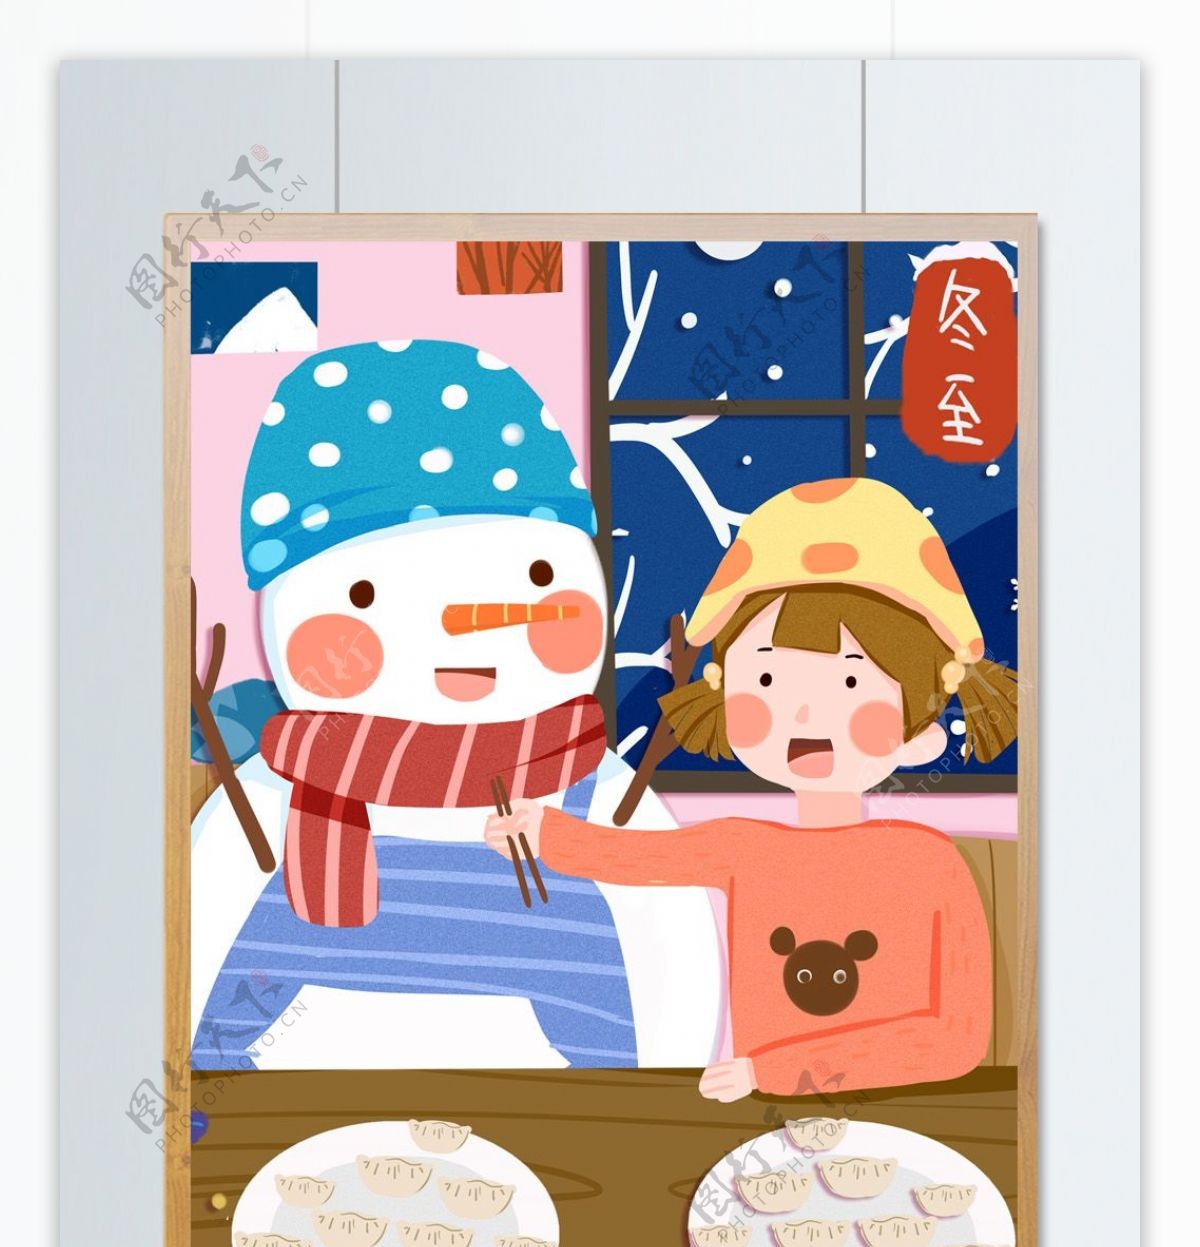 二十四节气之冬至小女孩与雪人吃饺子插画